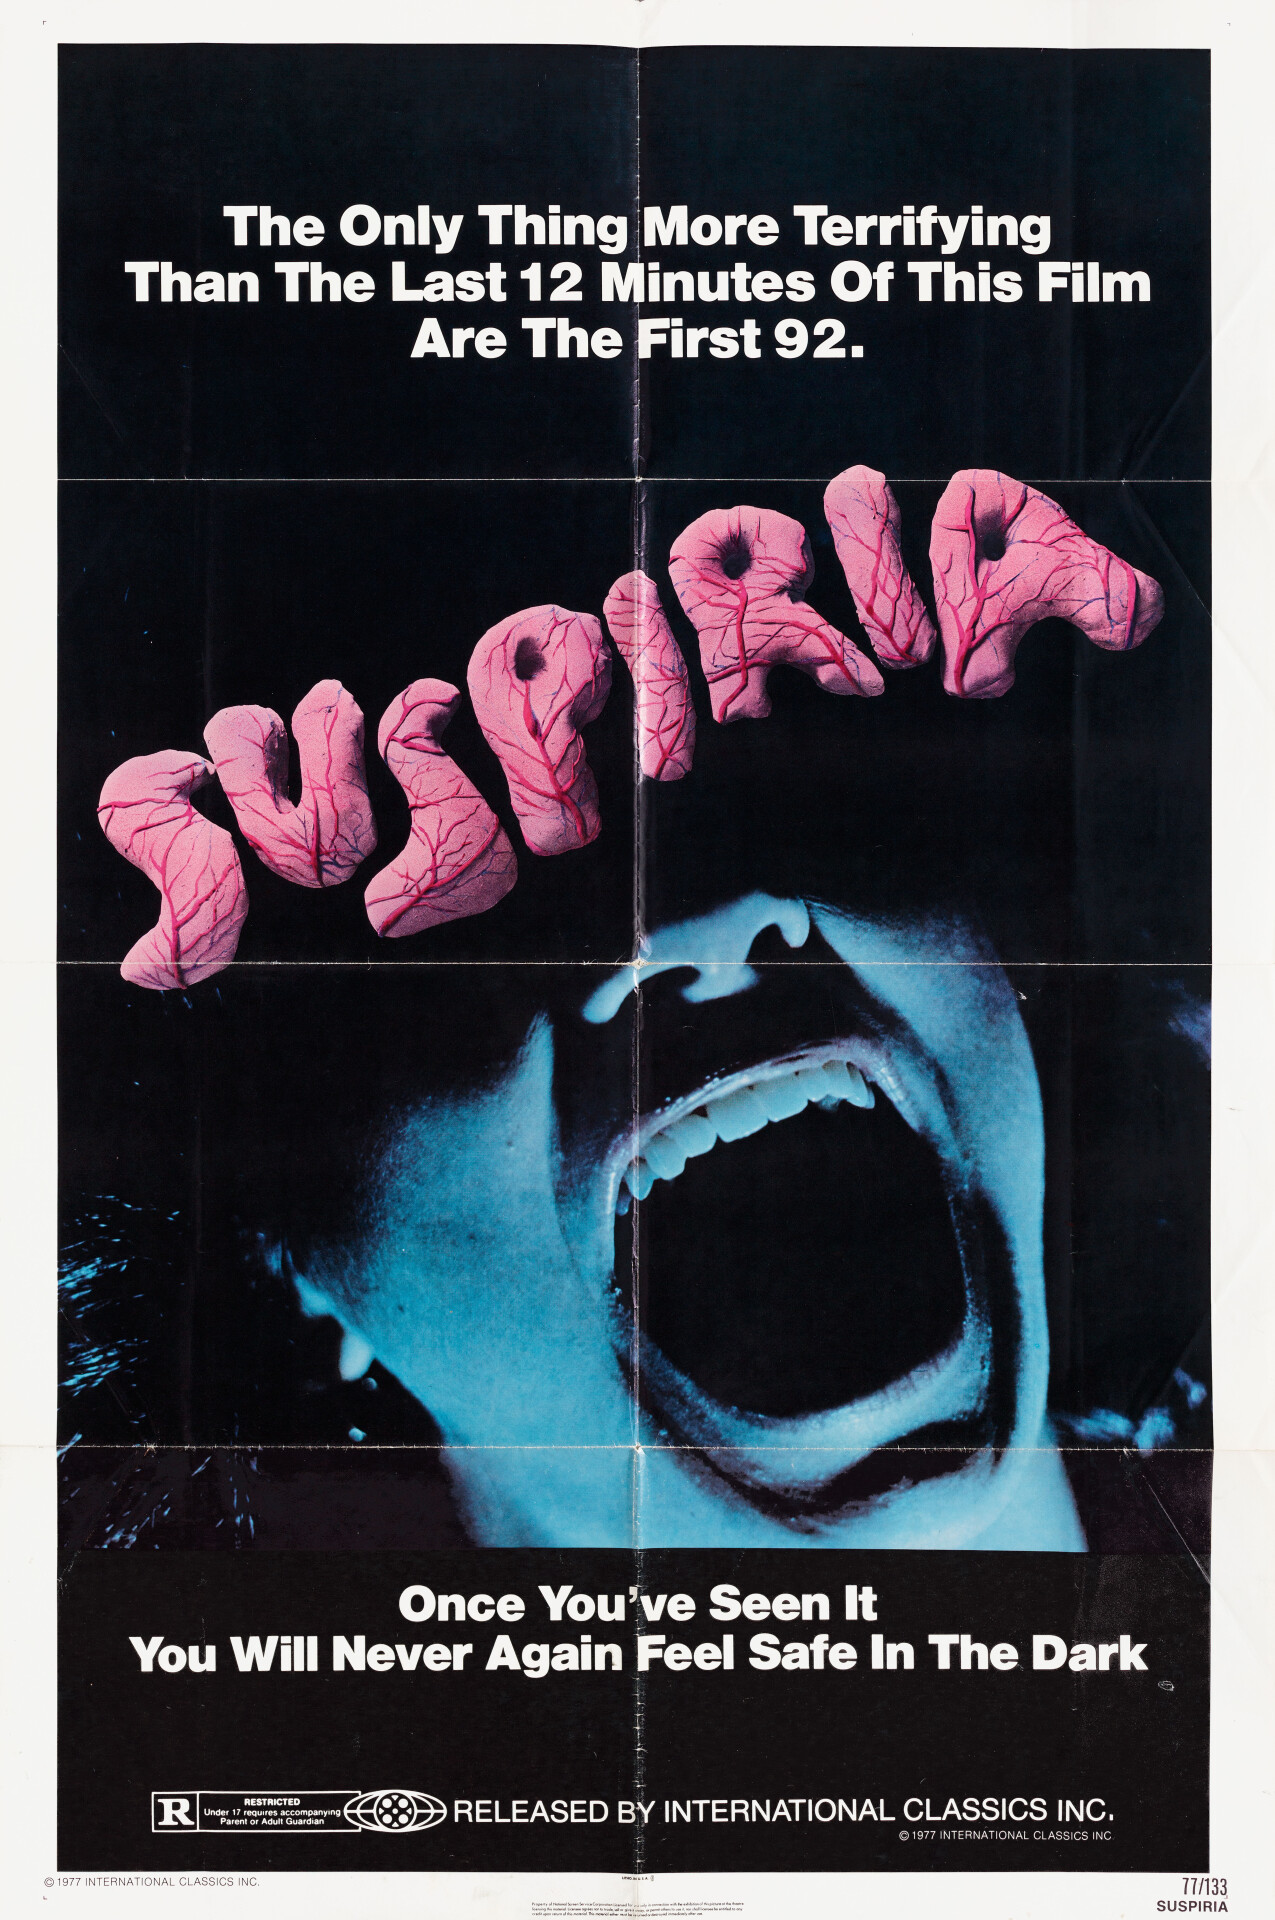 Суспирия (Suspiria, 1977), режиссёр Дарио Ардженто, американский постер к фильму (ужасы, 1977 год)